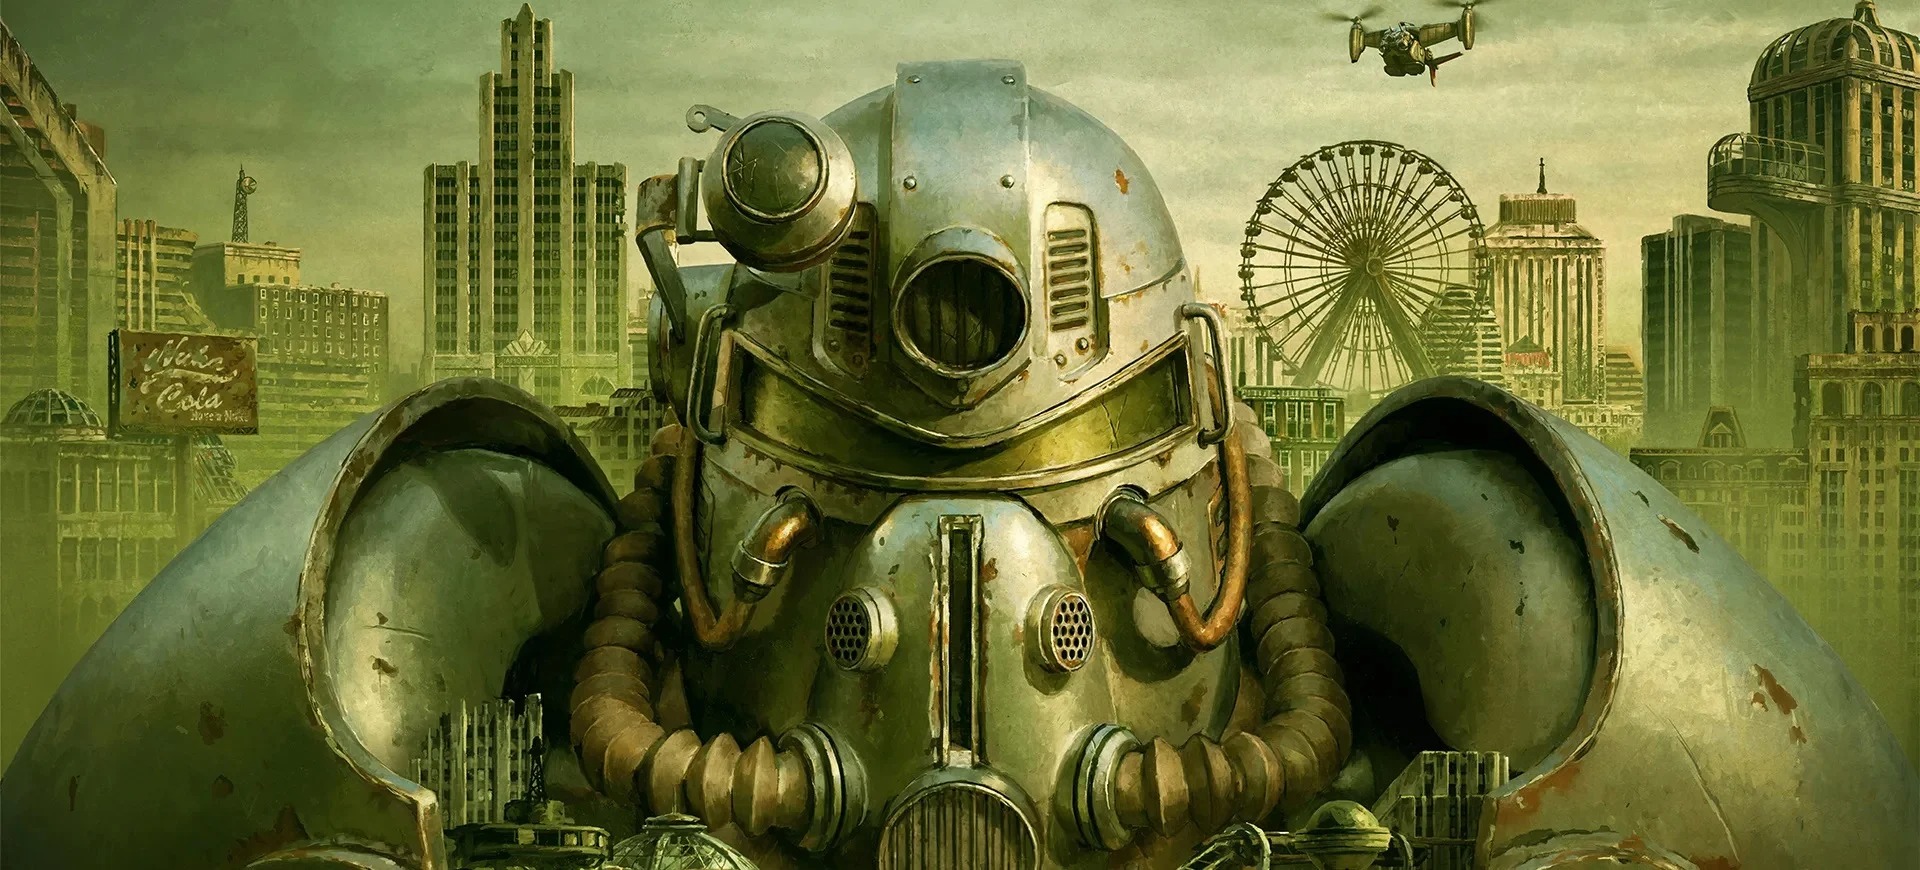 رکورد تعداد بازیکنان همزمان Fallout 76 در استیم بار دیگر شکست